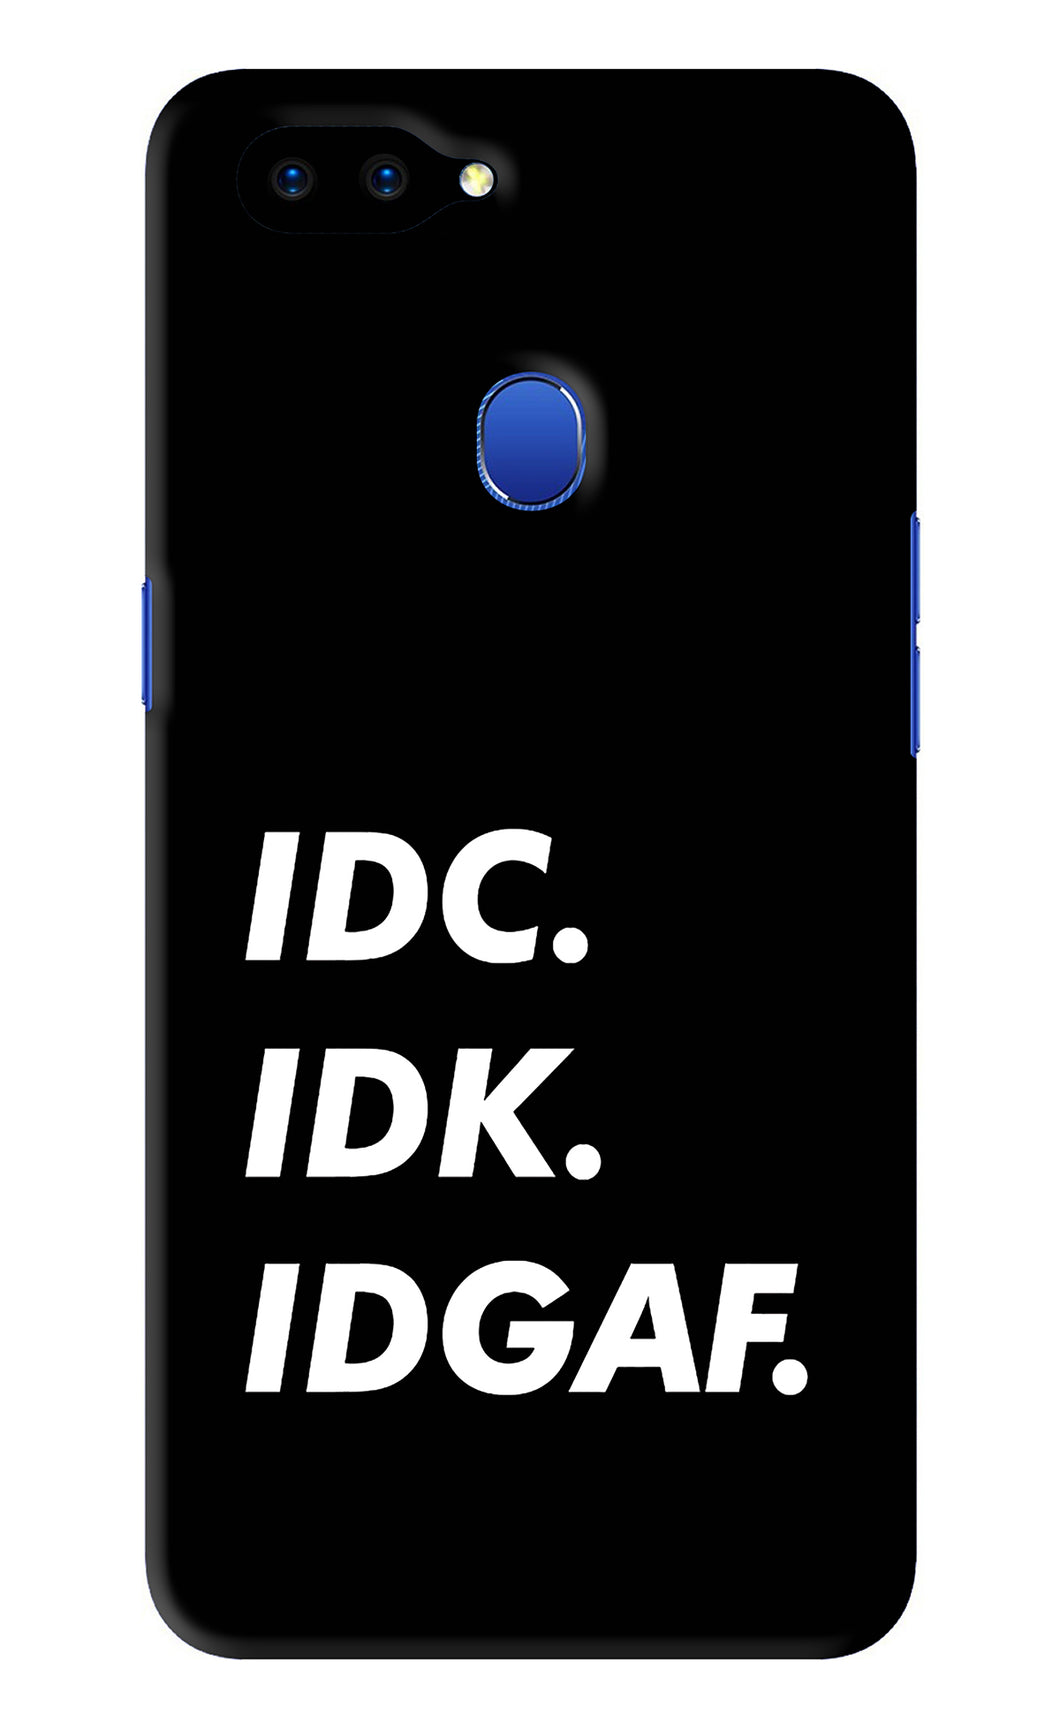 Idc Idk Idgaf Oppo A5 Back Skin Wrap